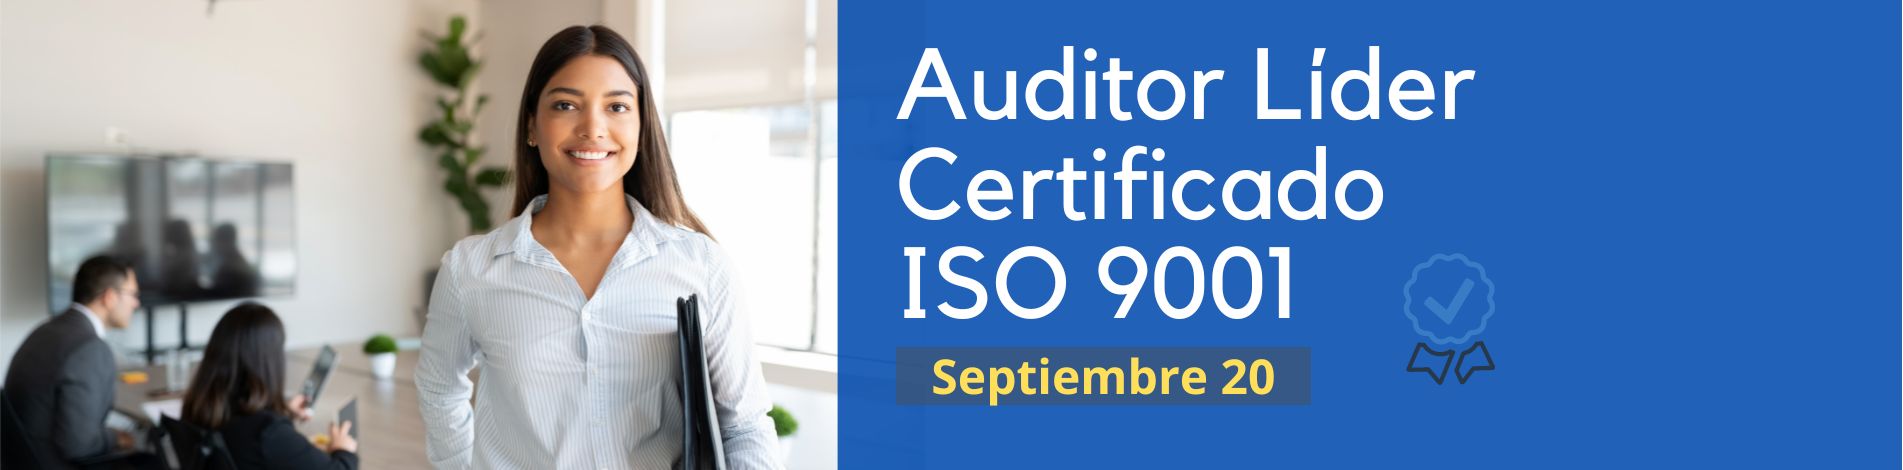 Auditor Líder ISO 9001